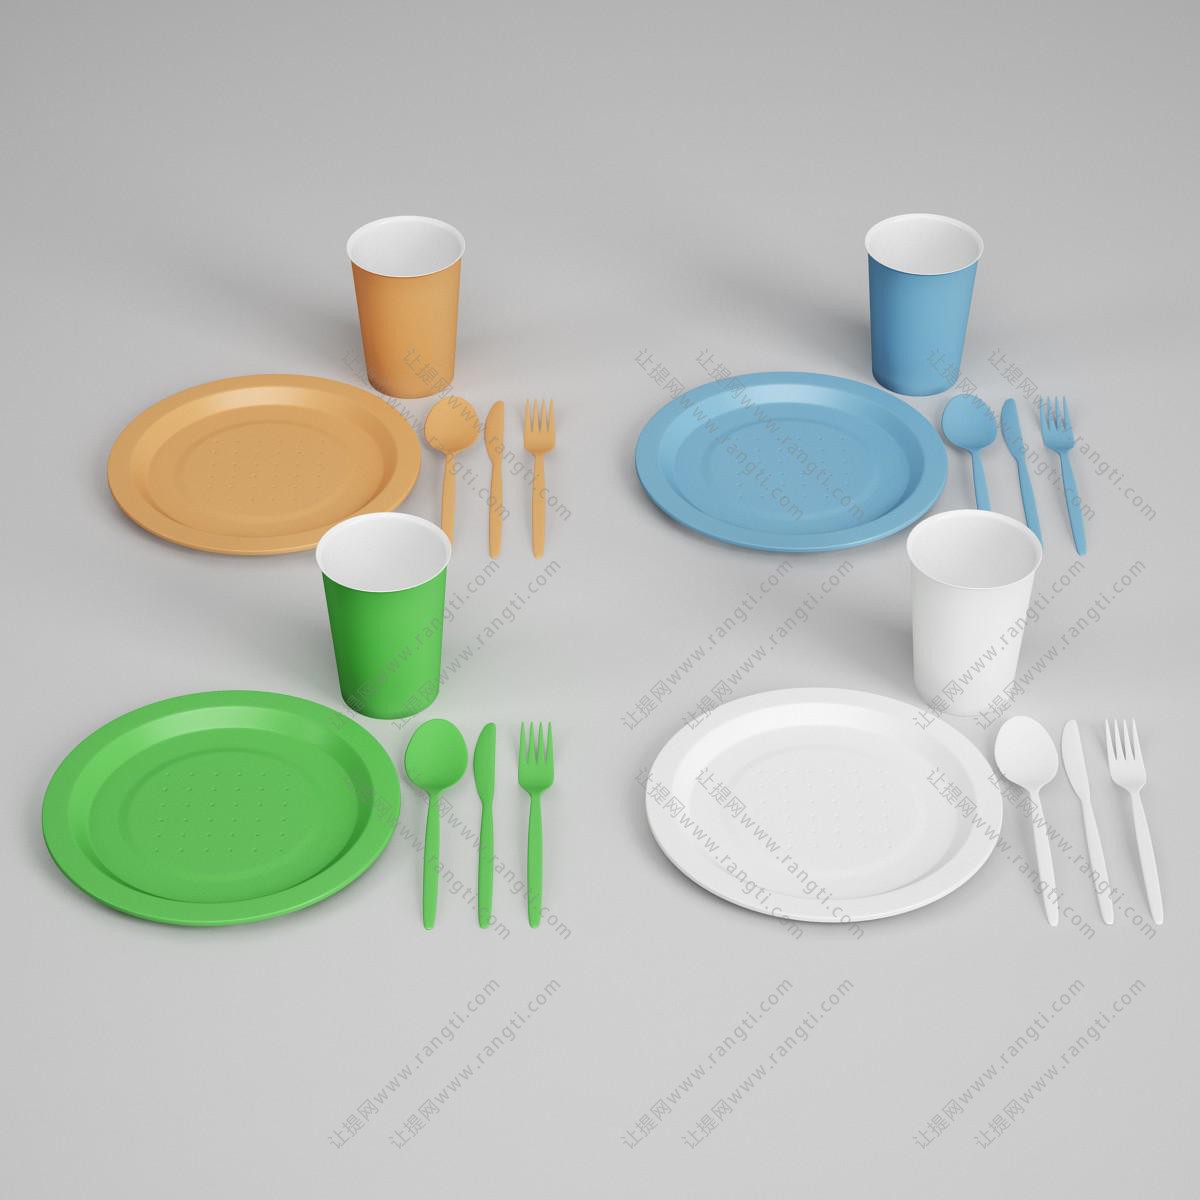 塑料盘子、杯子、勺子叉子餐具组合